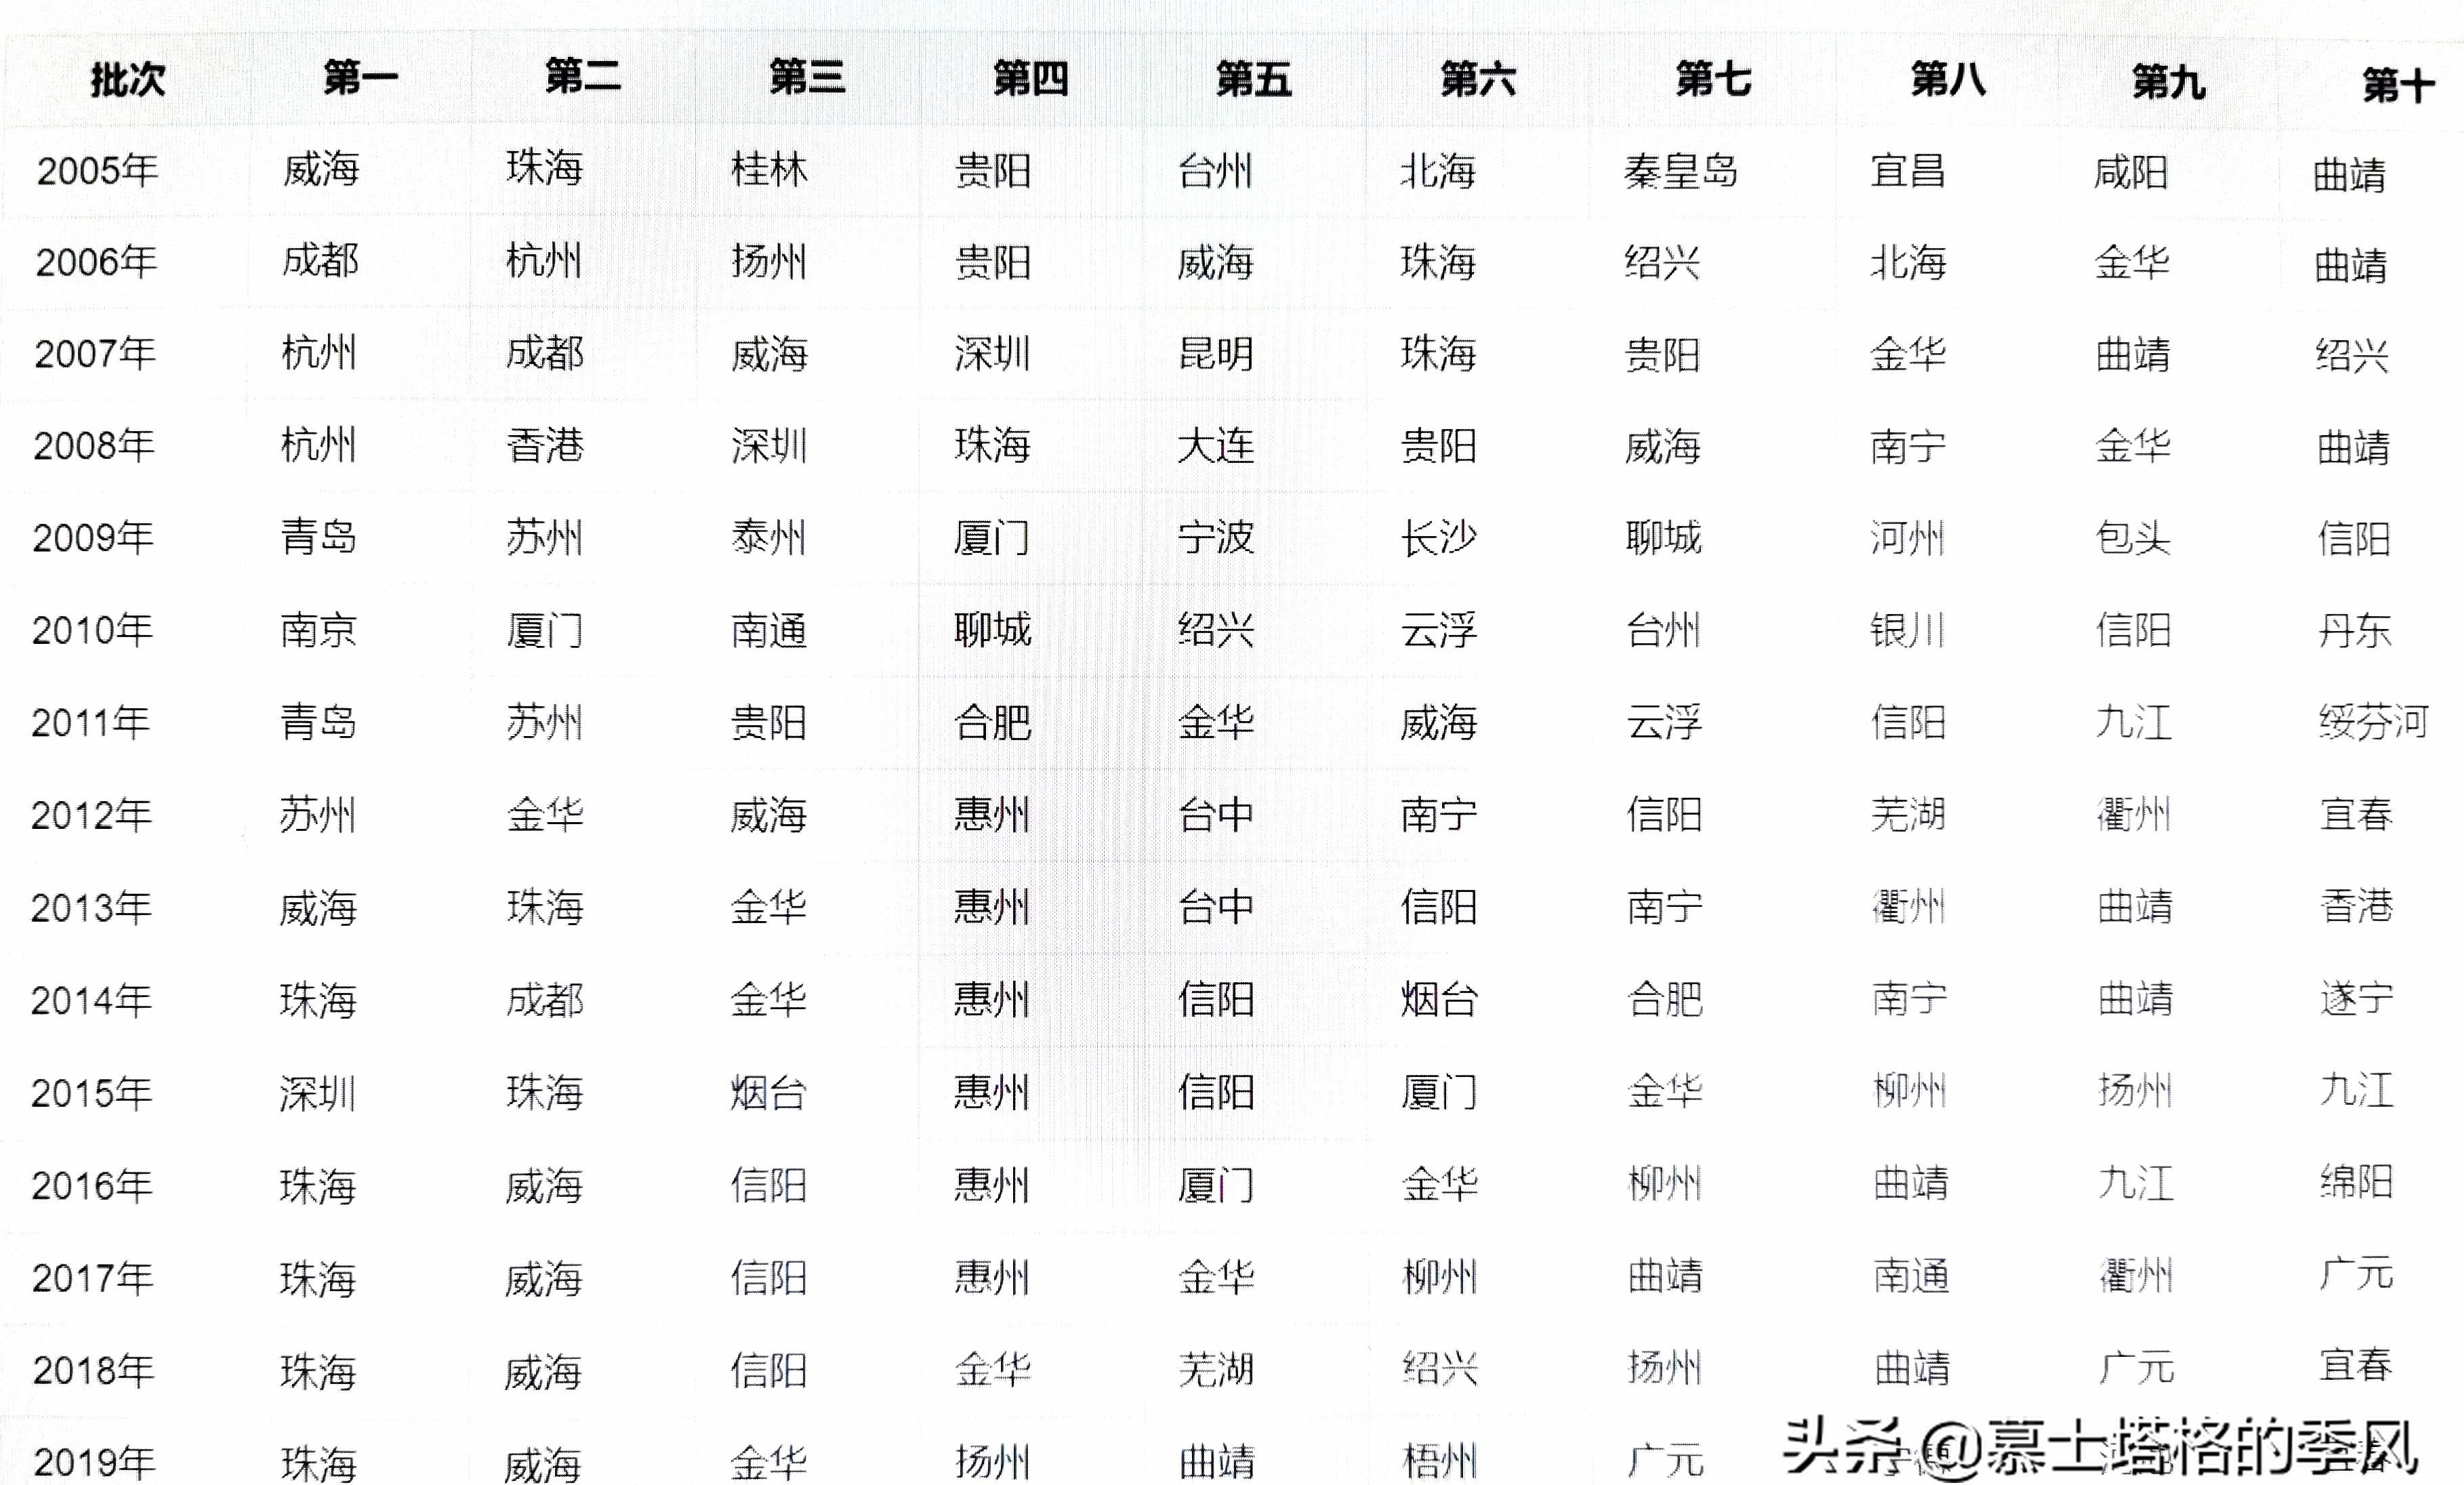 “中国十大宜居城市”已推出16届榜单，上榜次数最多的是这5座城